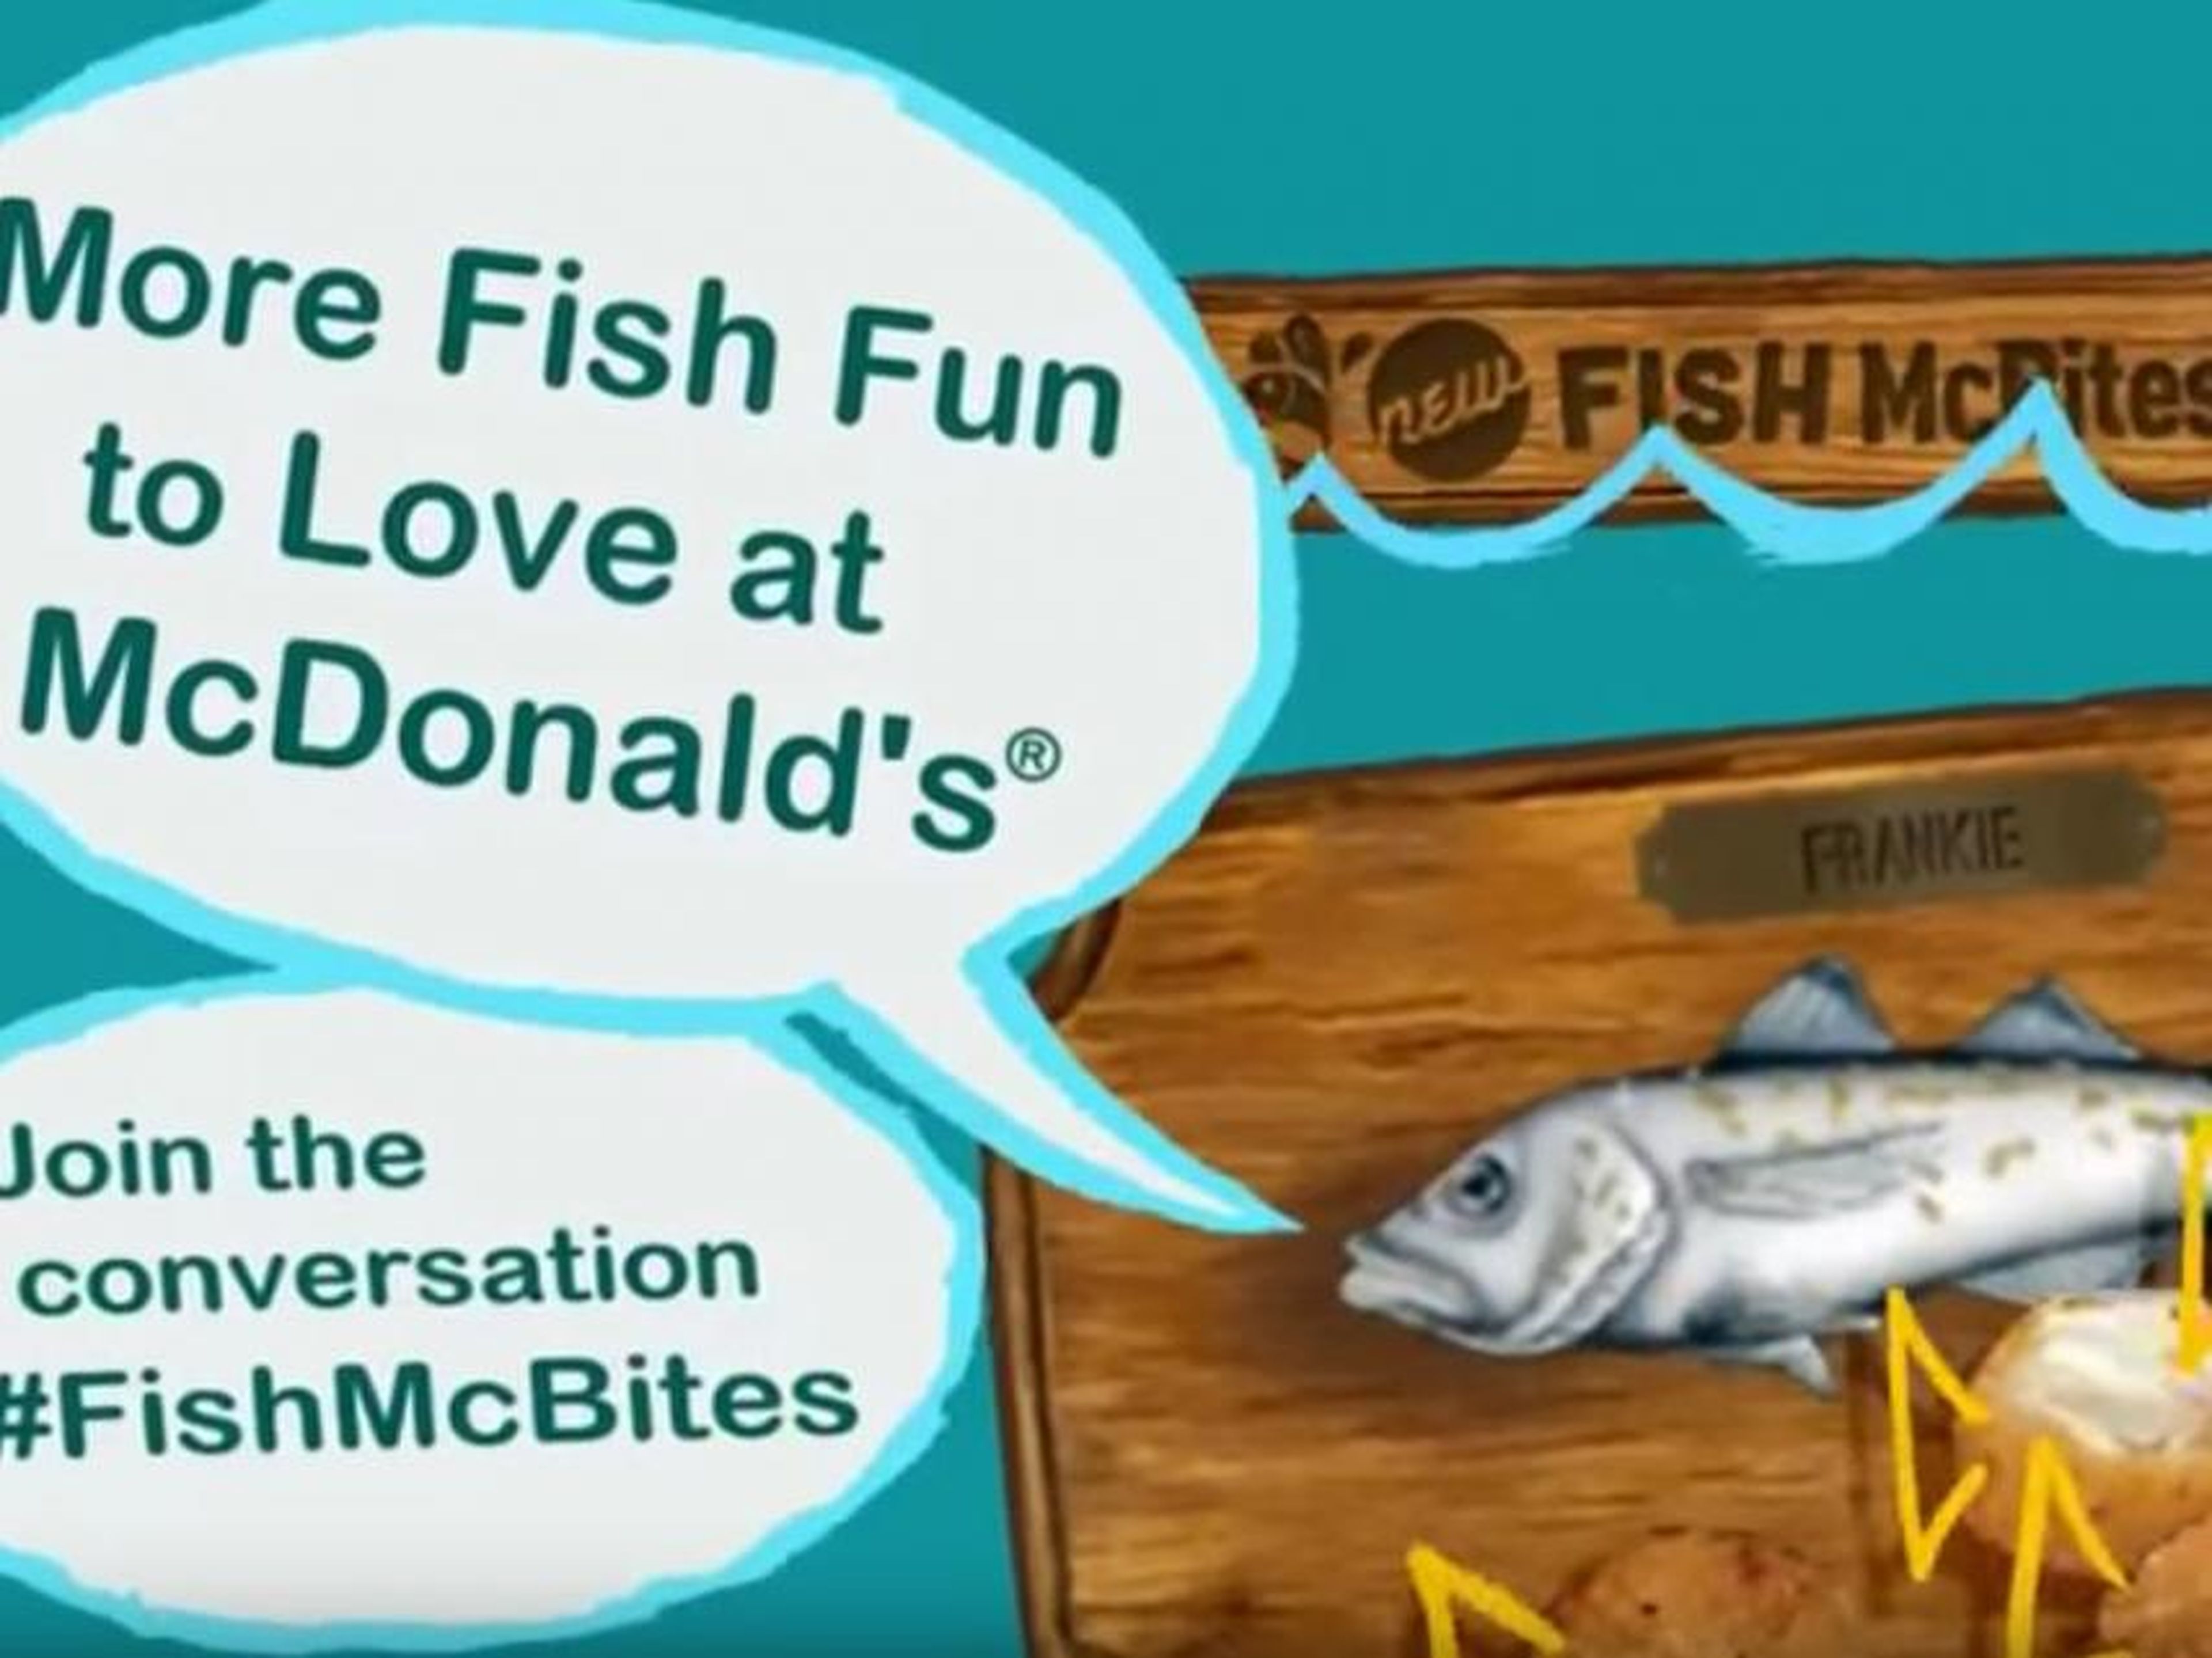 Fish McBites